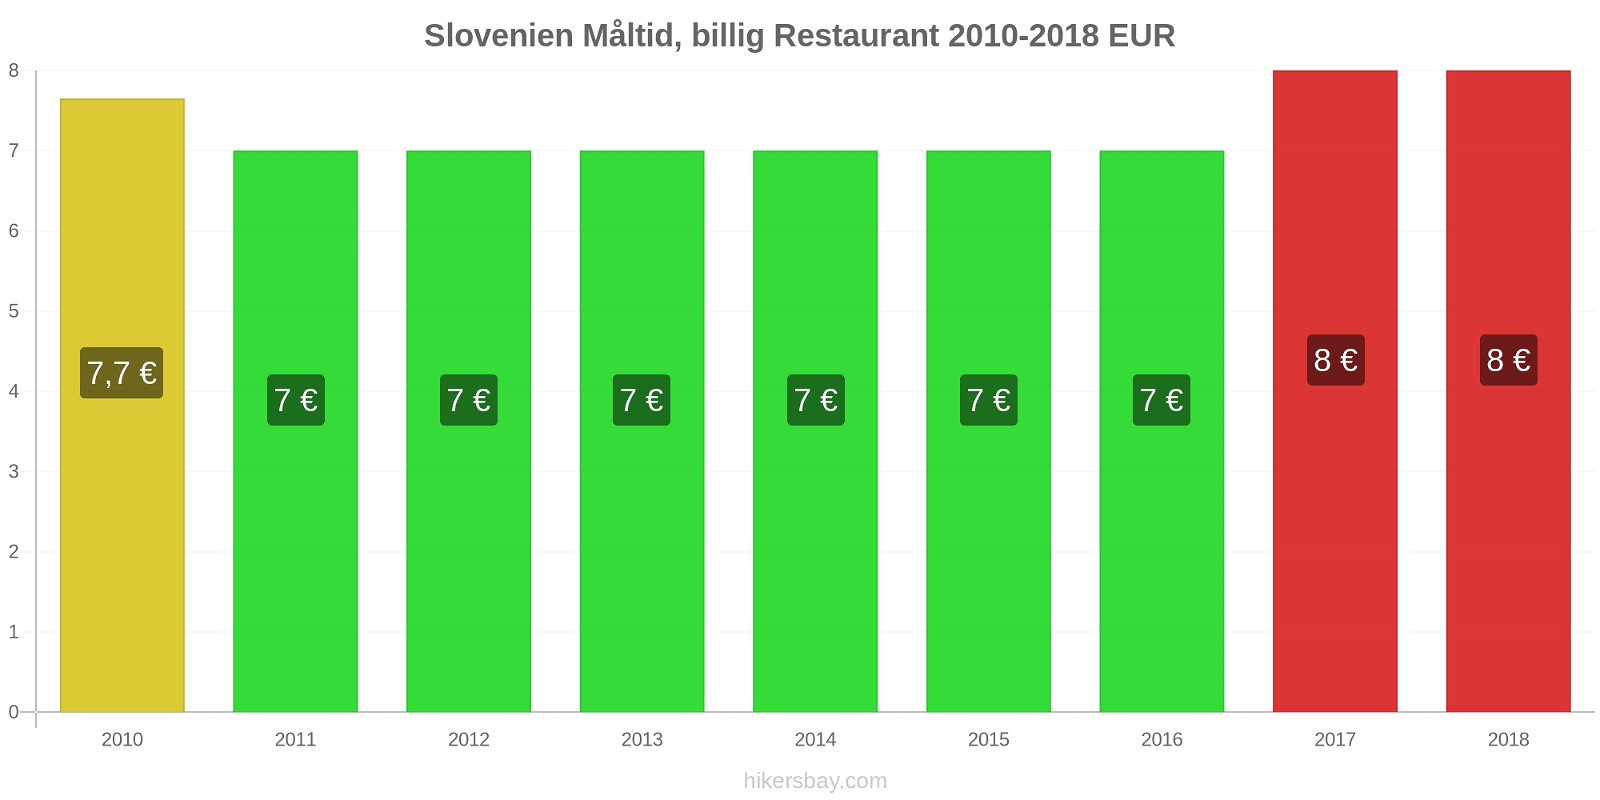 Slovenien prisændringer Måltid i en økonomisk restaurant hikersbay.com